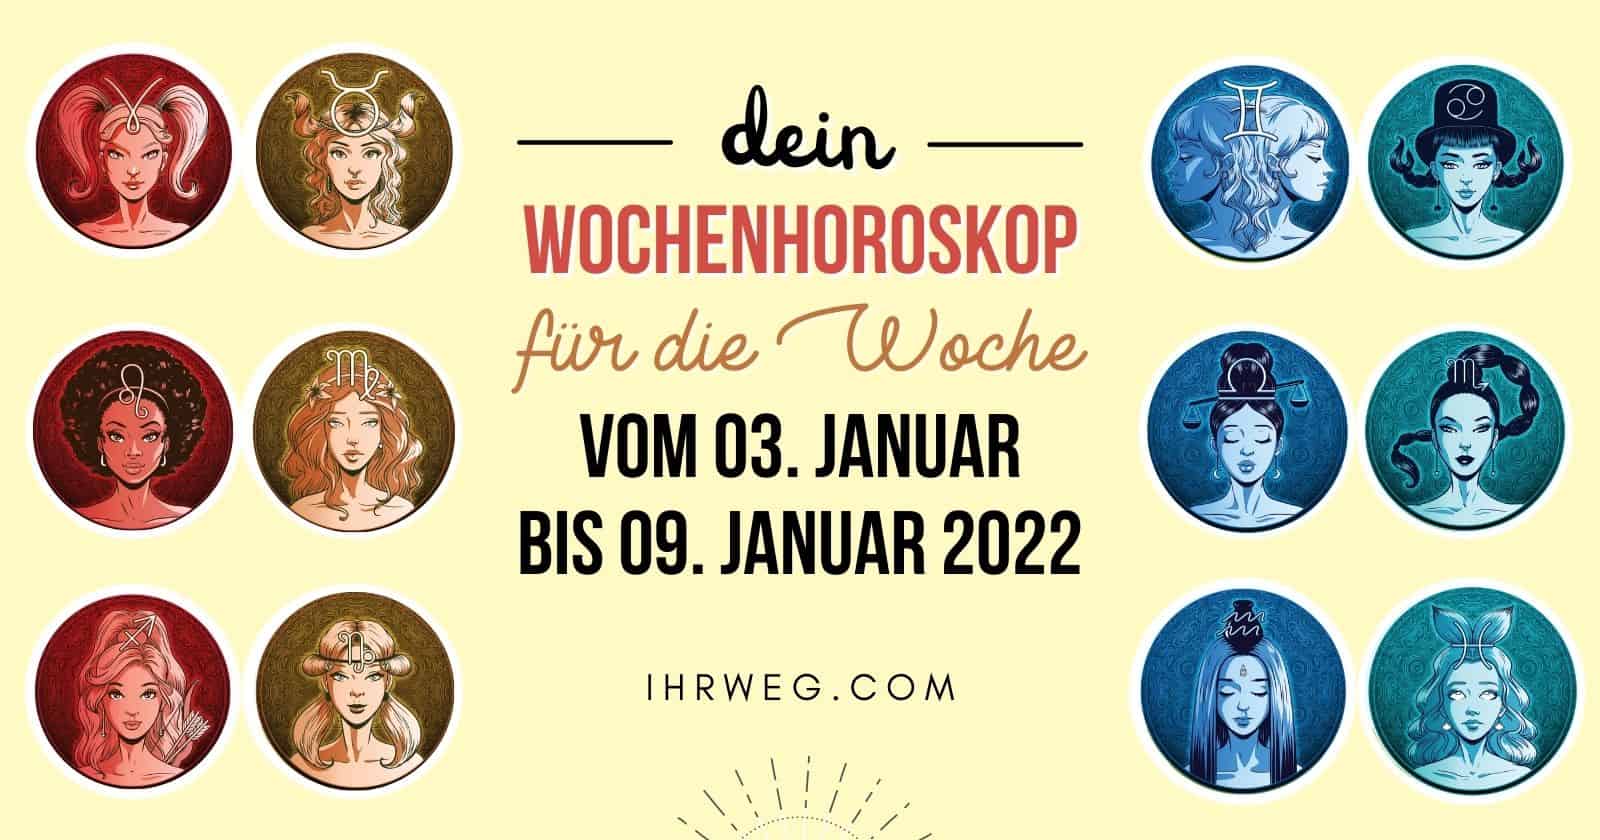 Dein Wochenhoroskop für die Woche vom 03. bis 09. Januar 2022